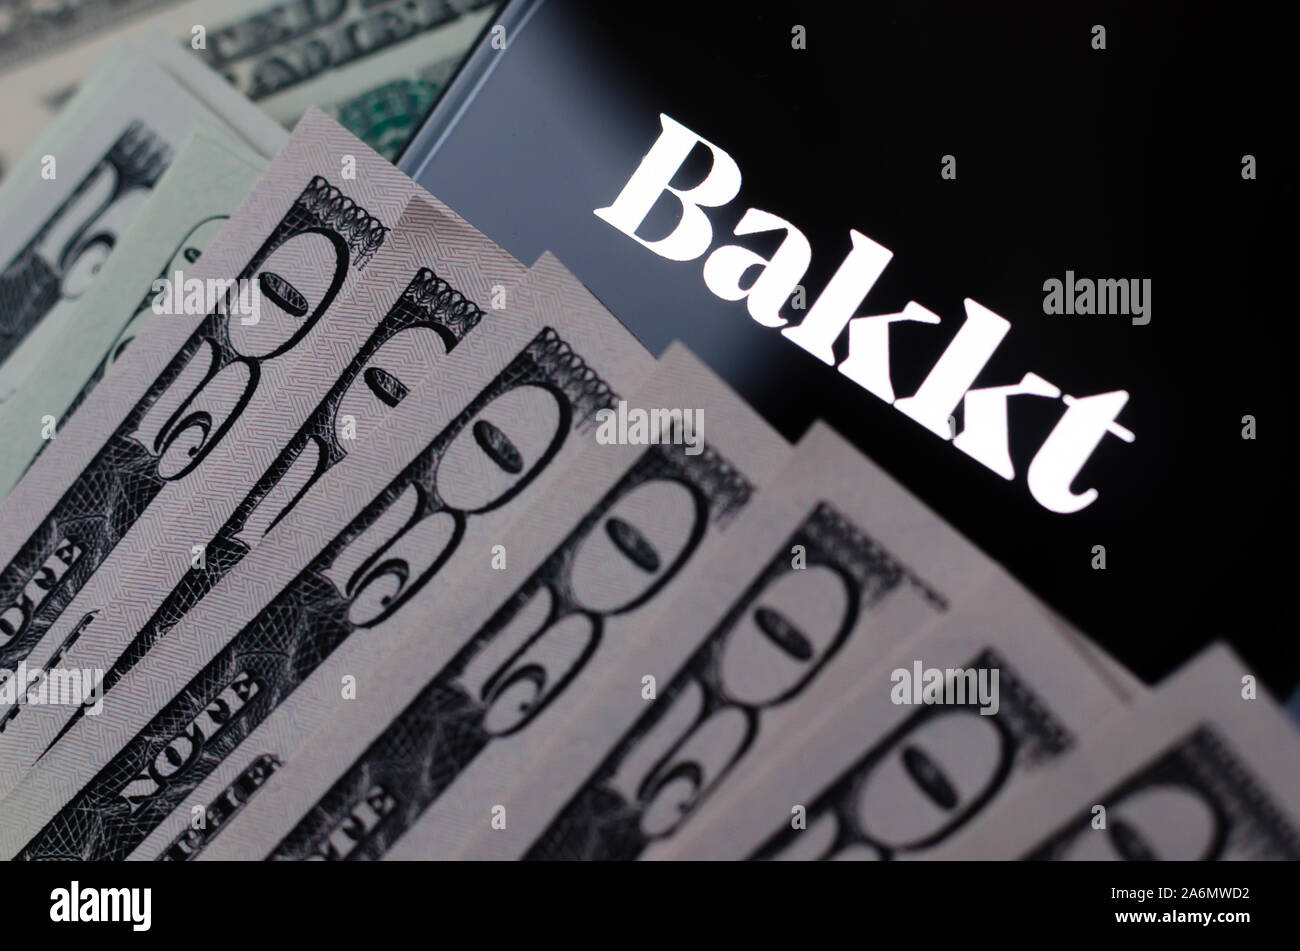 Bakkt è un asset digitali servizio custody, noto per Bakkt Bitcoin contratti Futures trading. Foto concettuale. Foto Stock